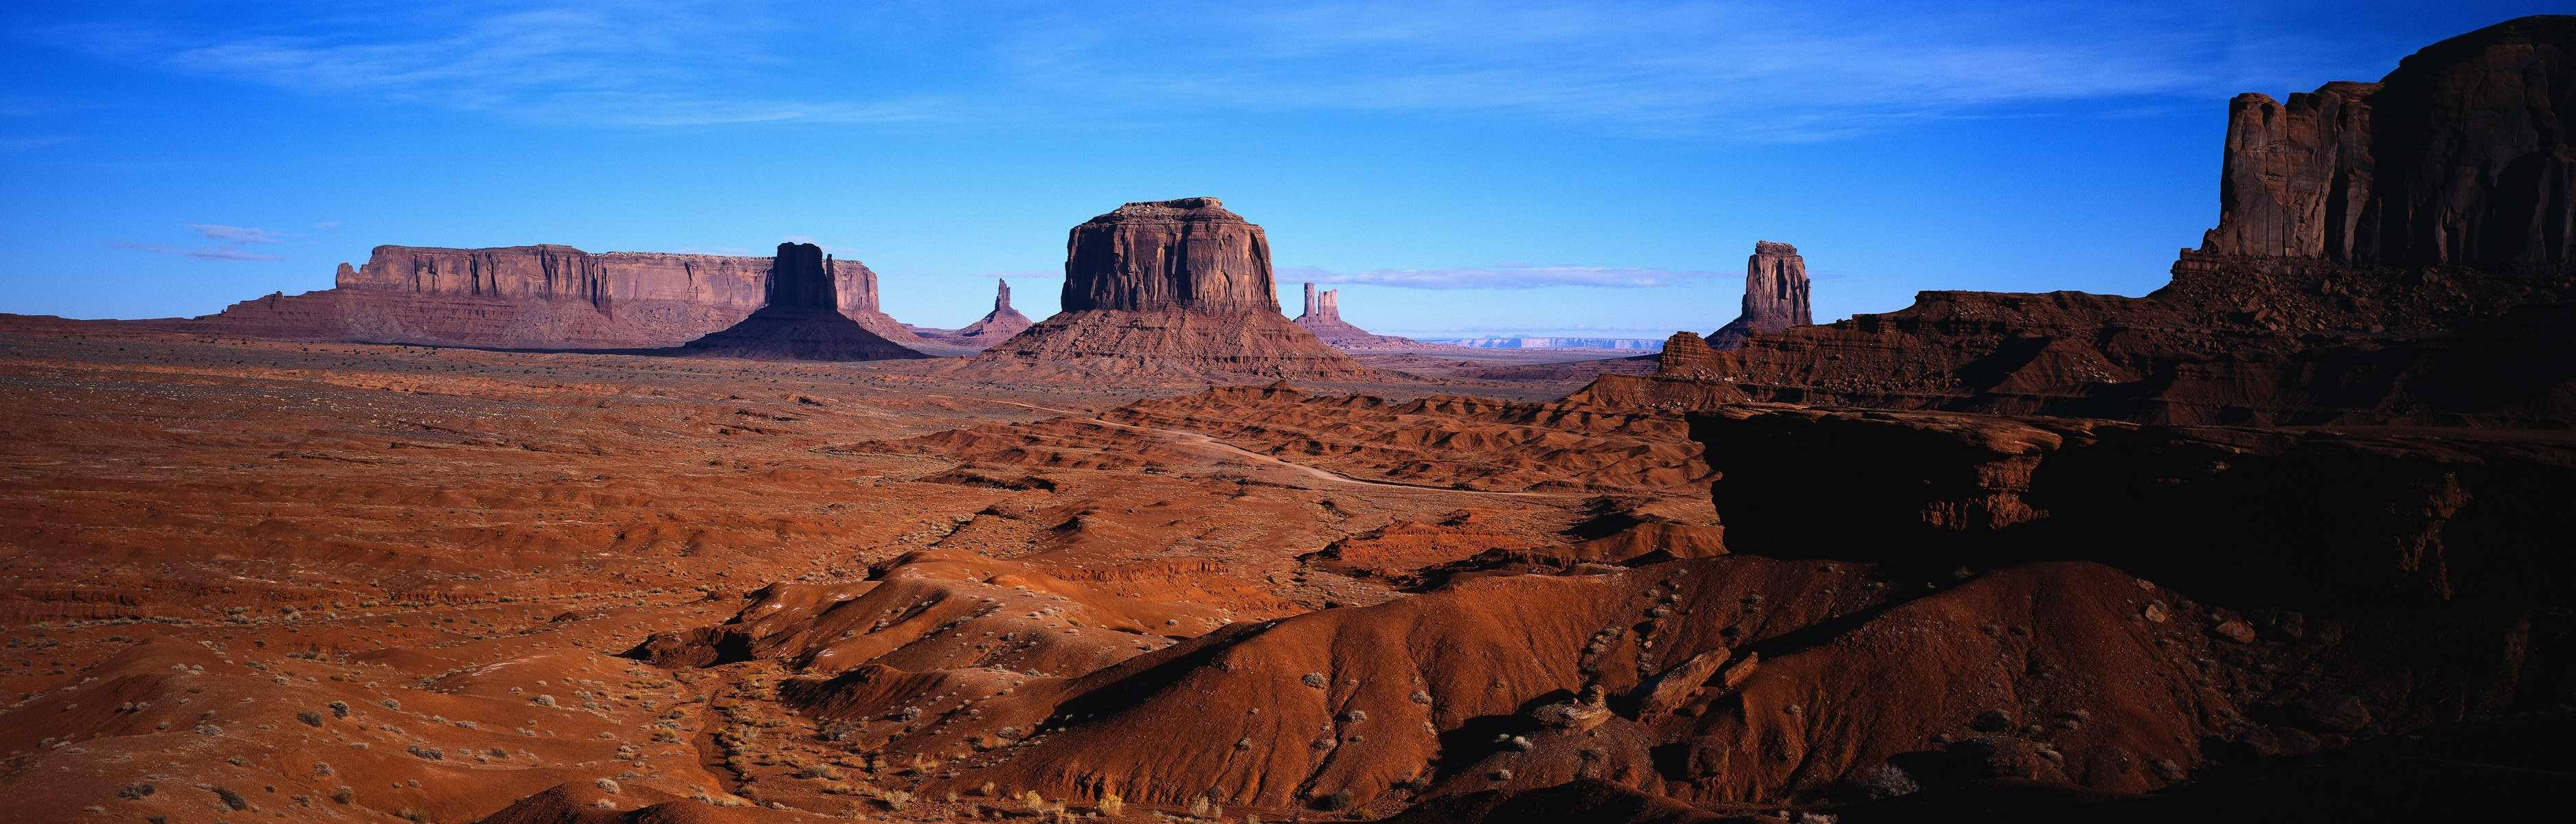 Rödastenlandskapet I Panoramabild. Wallpaper